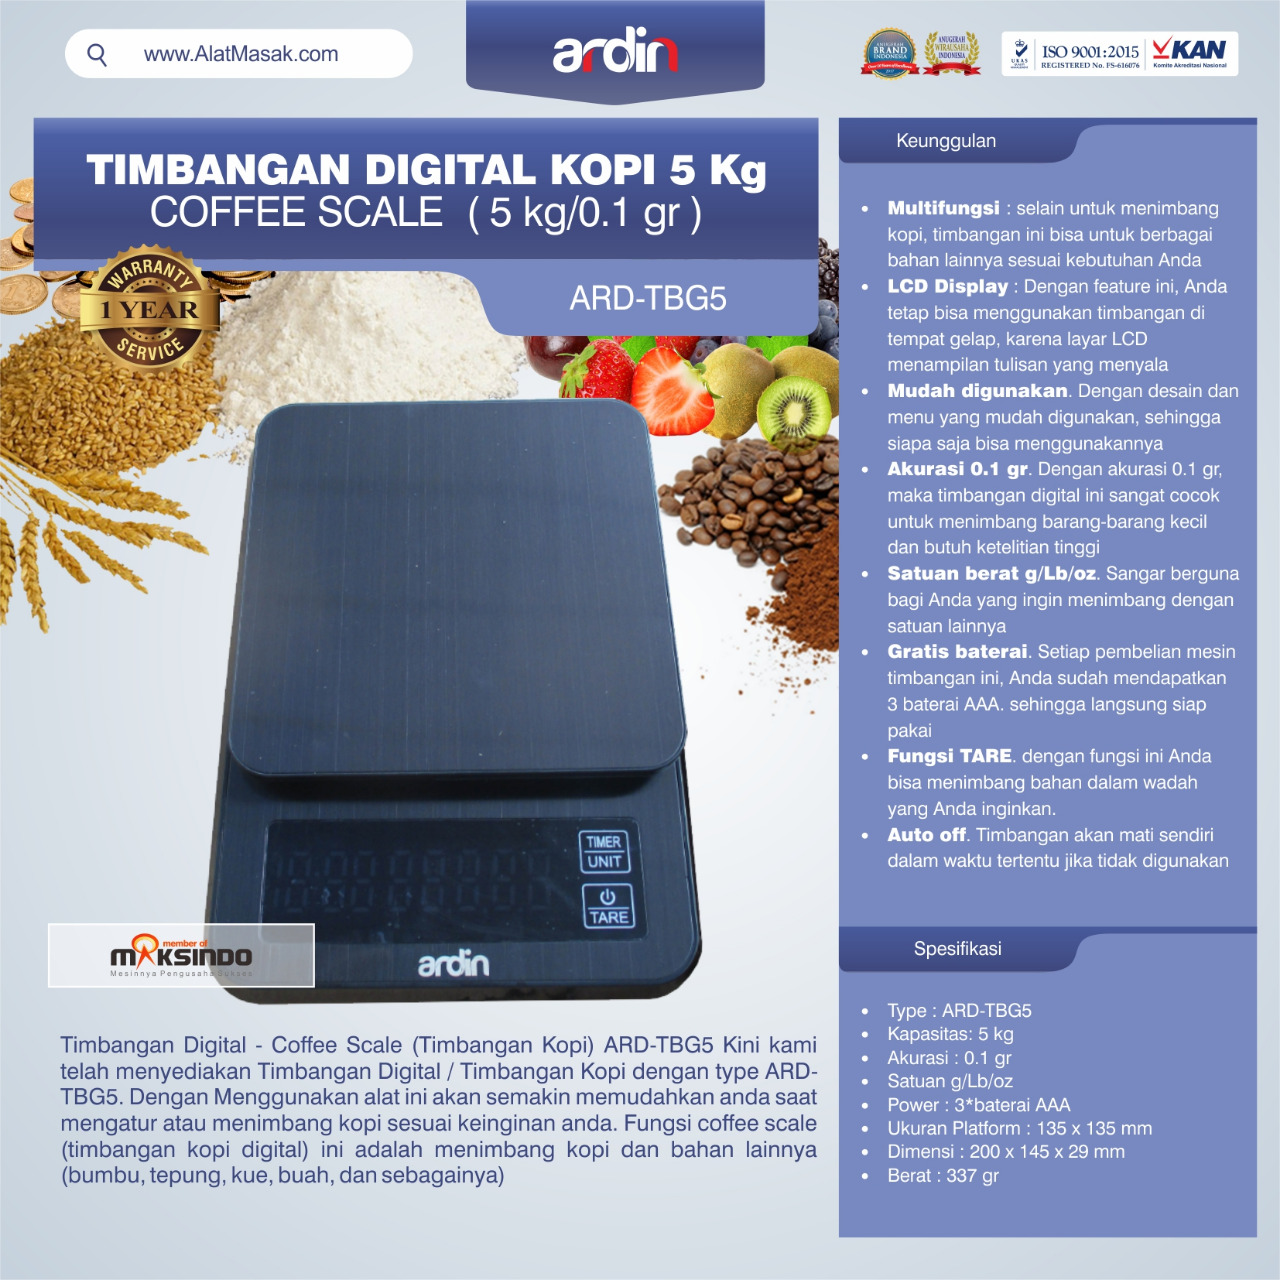 Jual Timbangan Digital Kopi 5 kg ARD-TBG5 (coffee scale) di bekasi